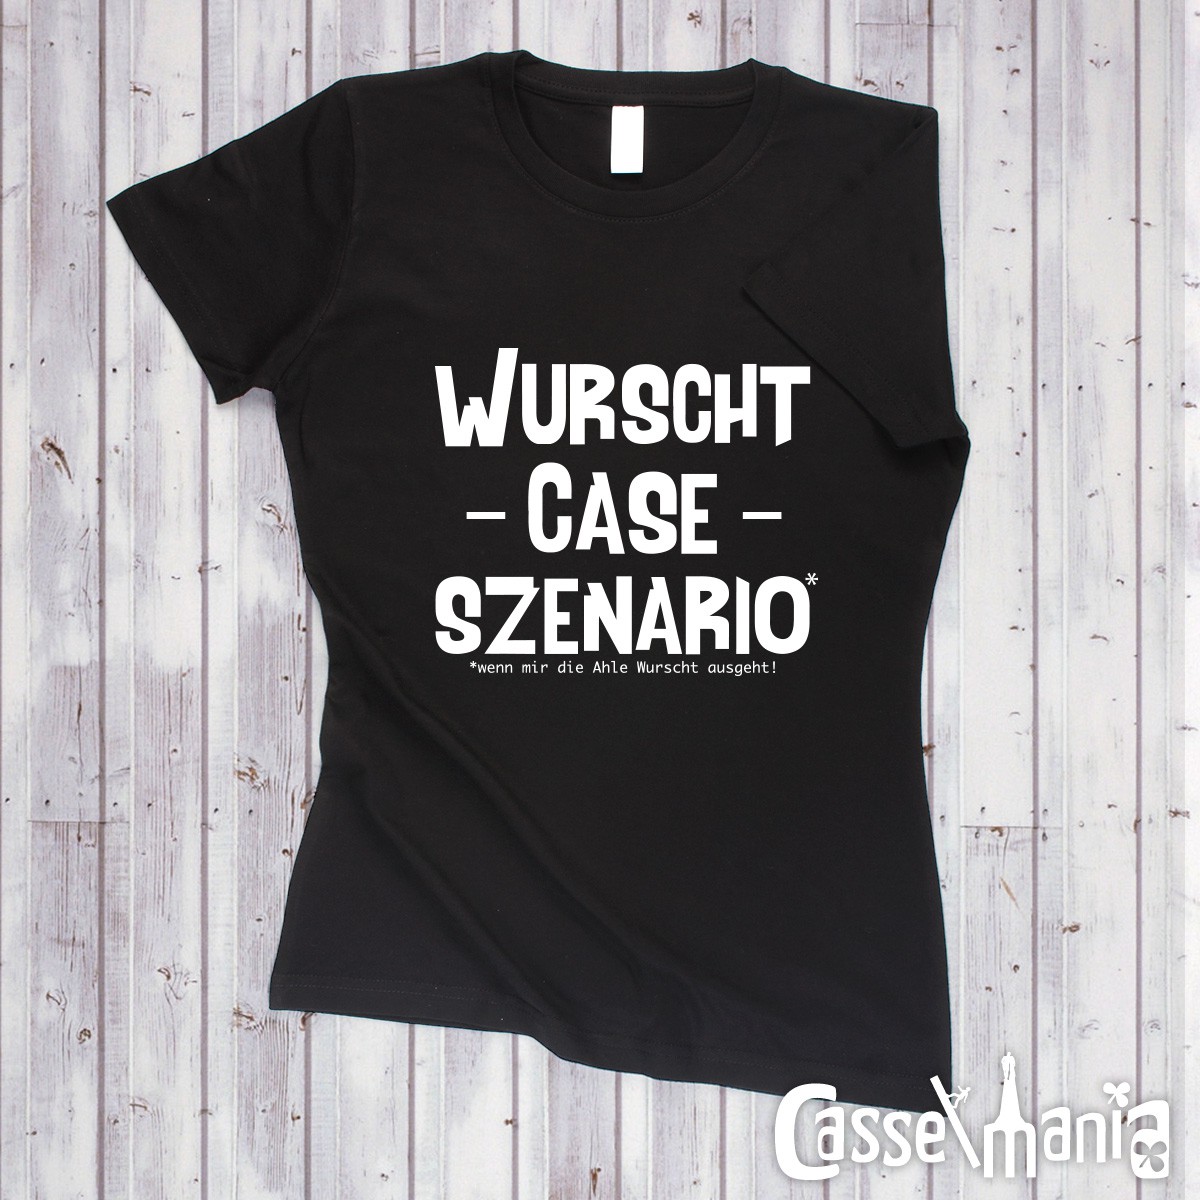 Wurscht Case Szenario - Women